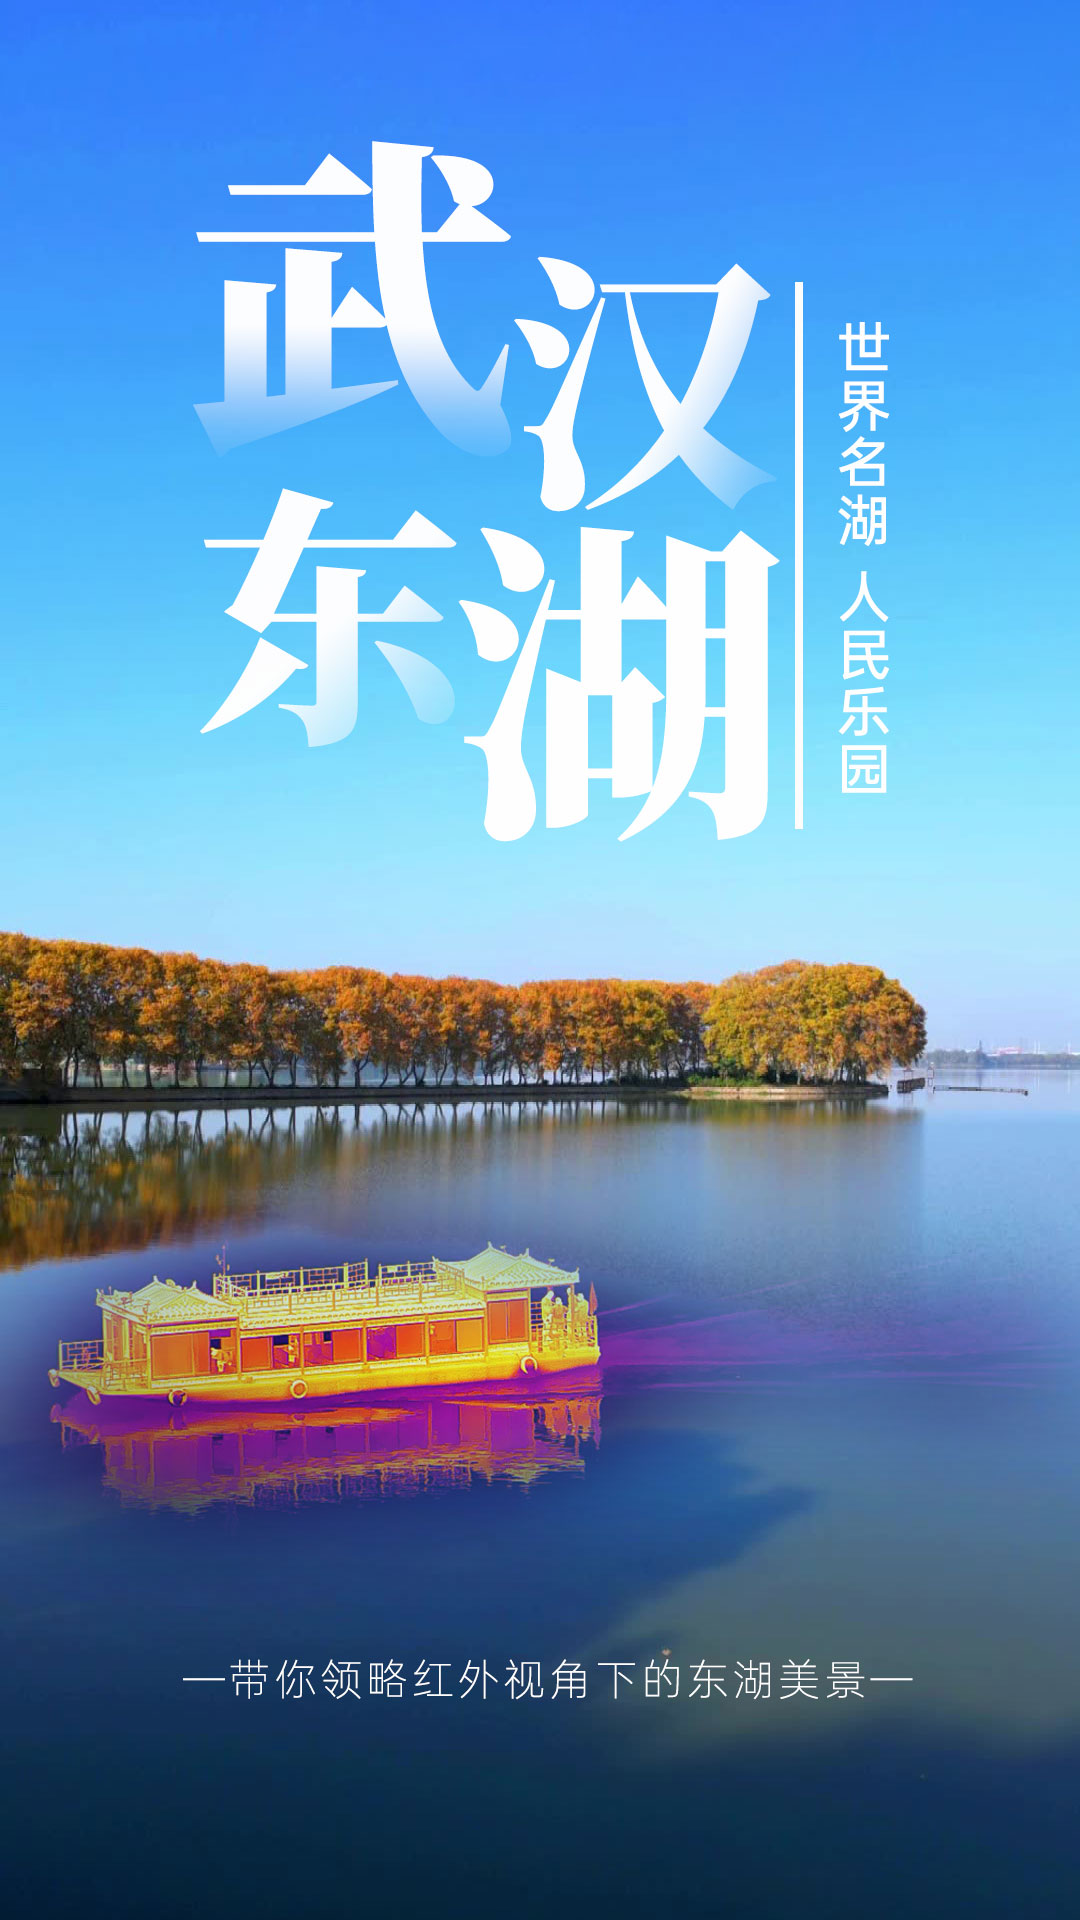 前奏一响放假的心已经蠢蠢欲动了，武汉东湖等你畅游 #红外热成像 #五一快乐 #武汉东湖 